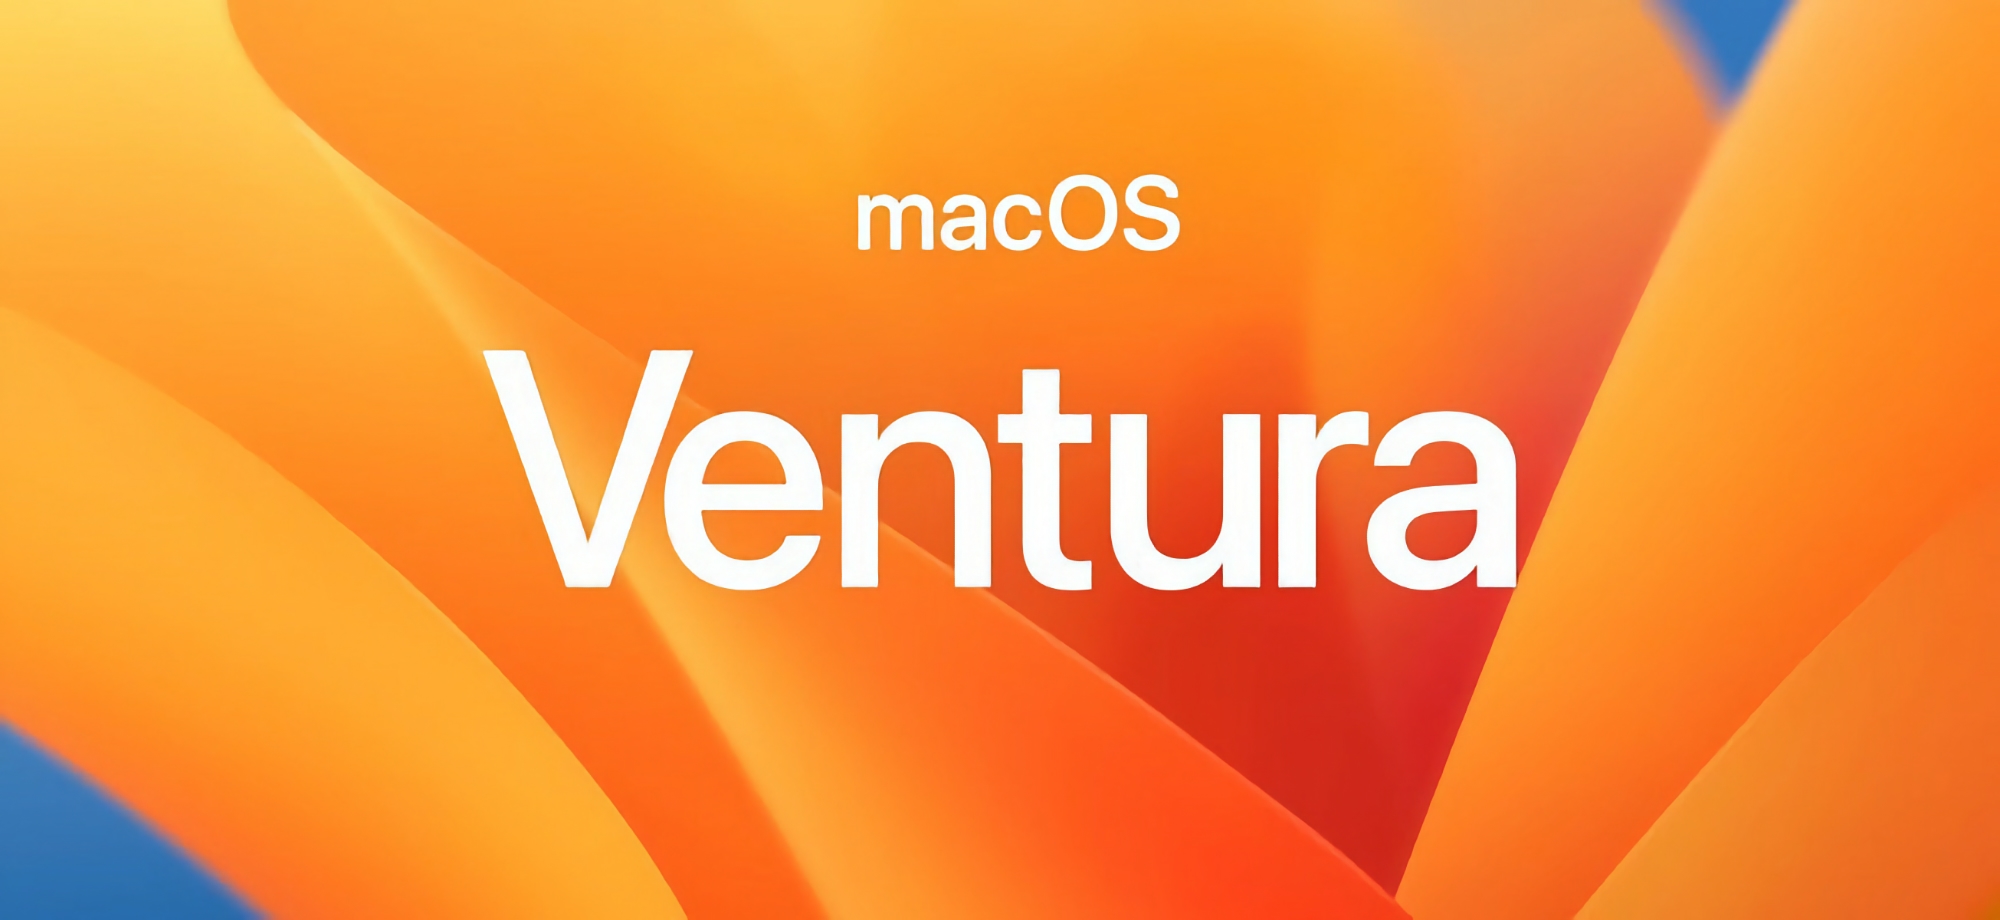 Tras iOS 16.1.1 y iPadOS 16.1.1: Apple ha anunciado la actualización de macOS Ventura 13.0.1